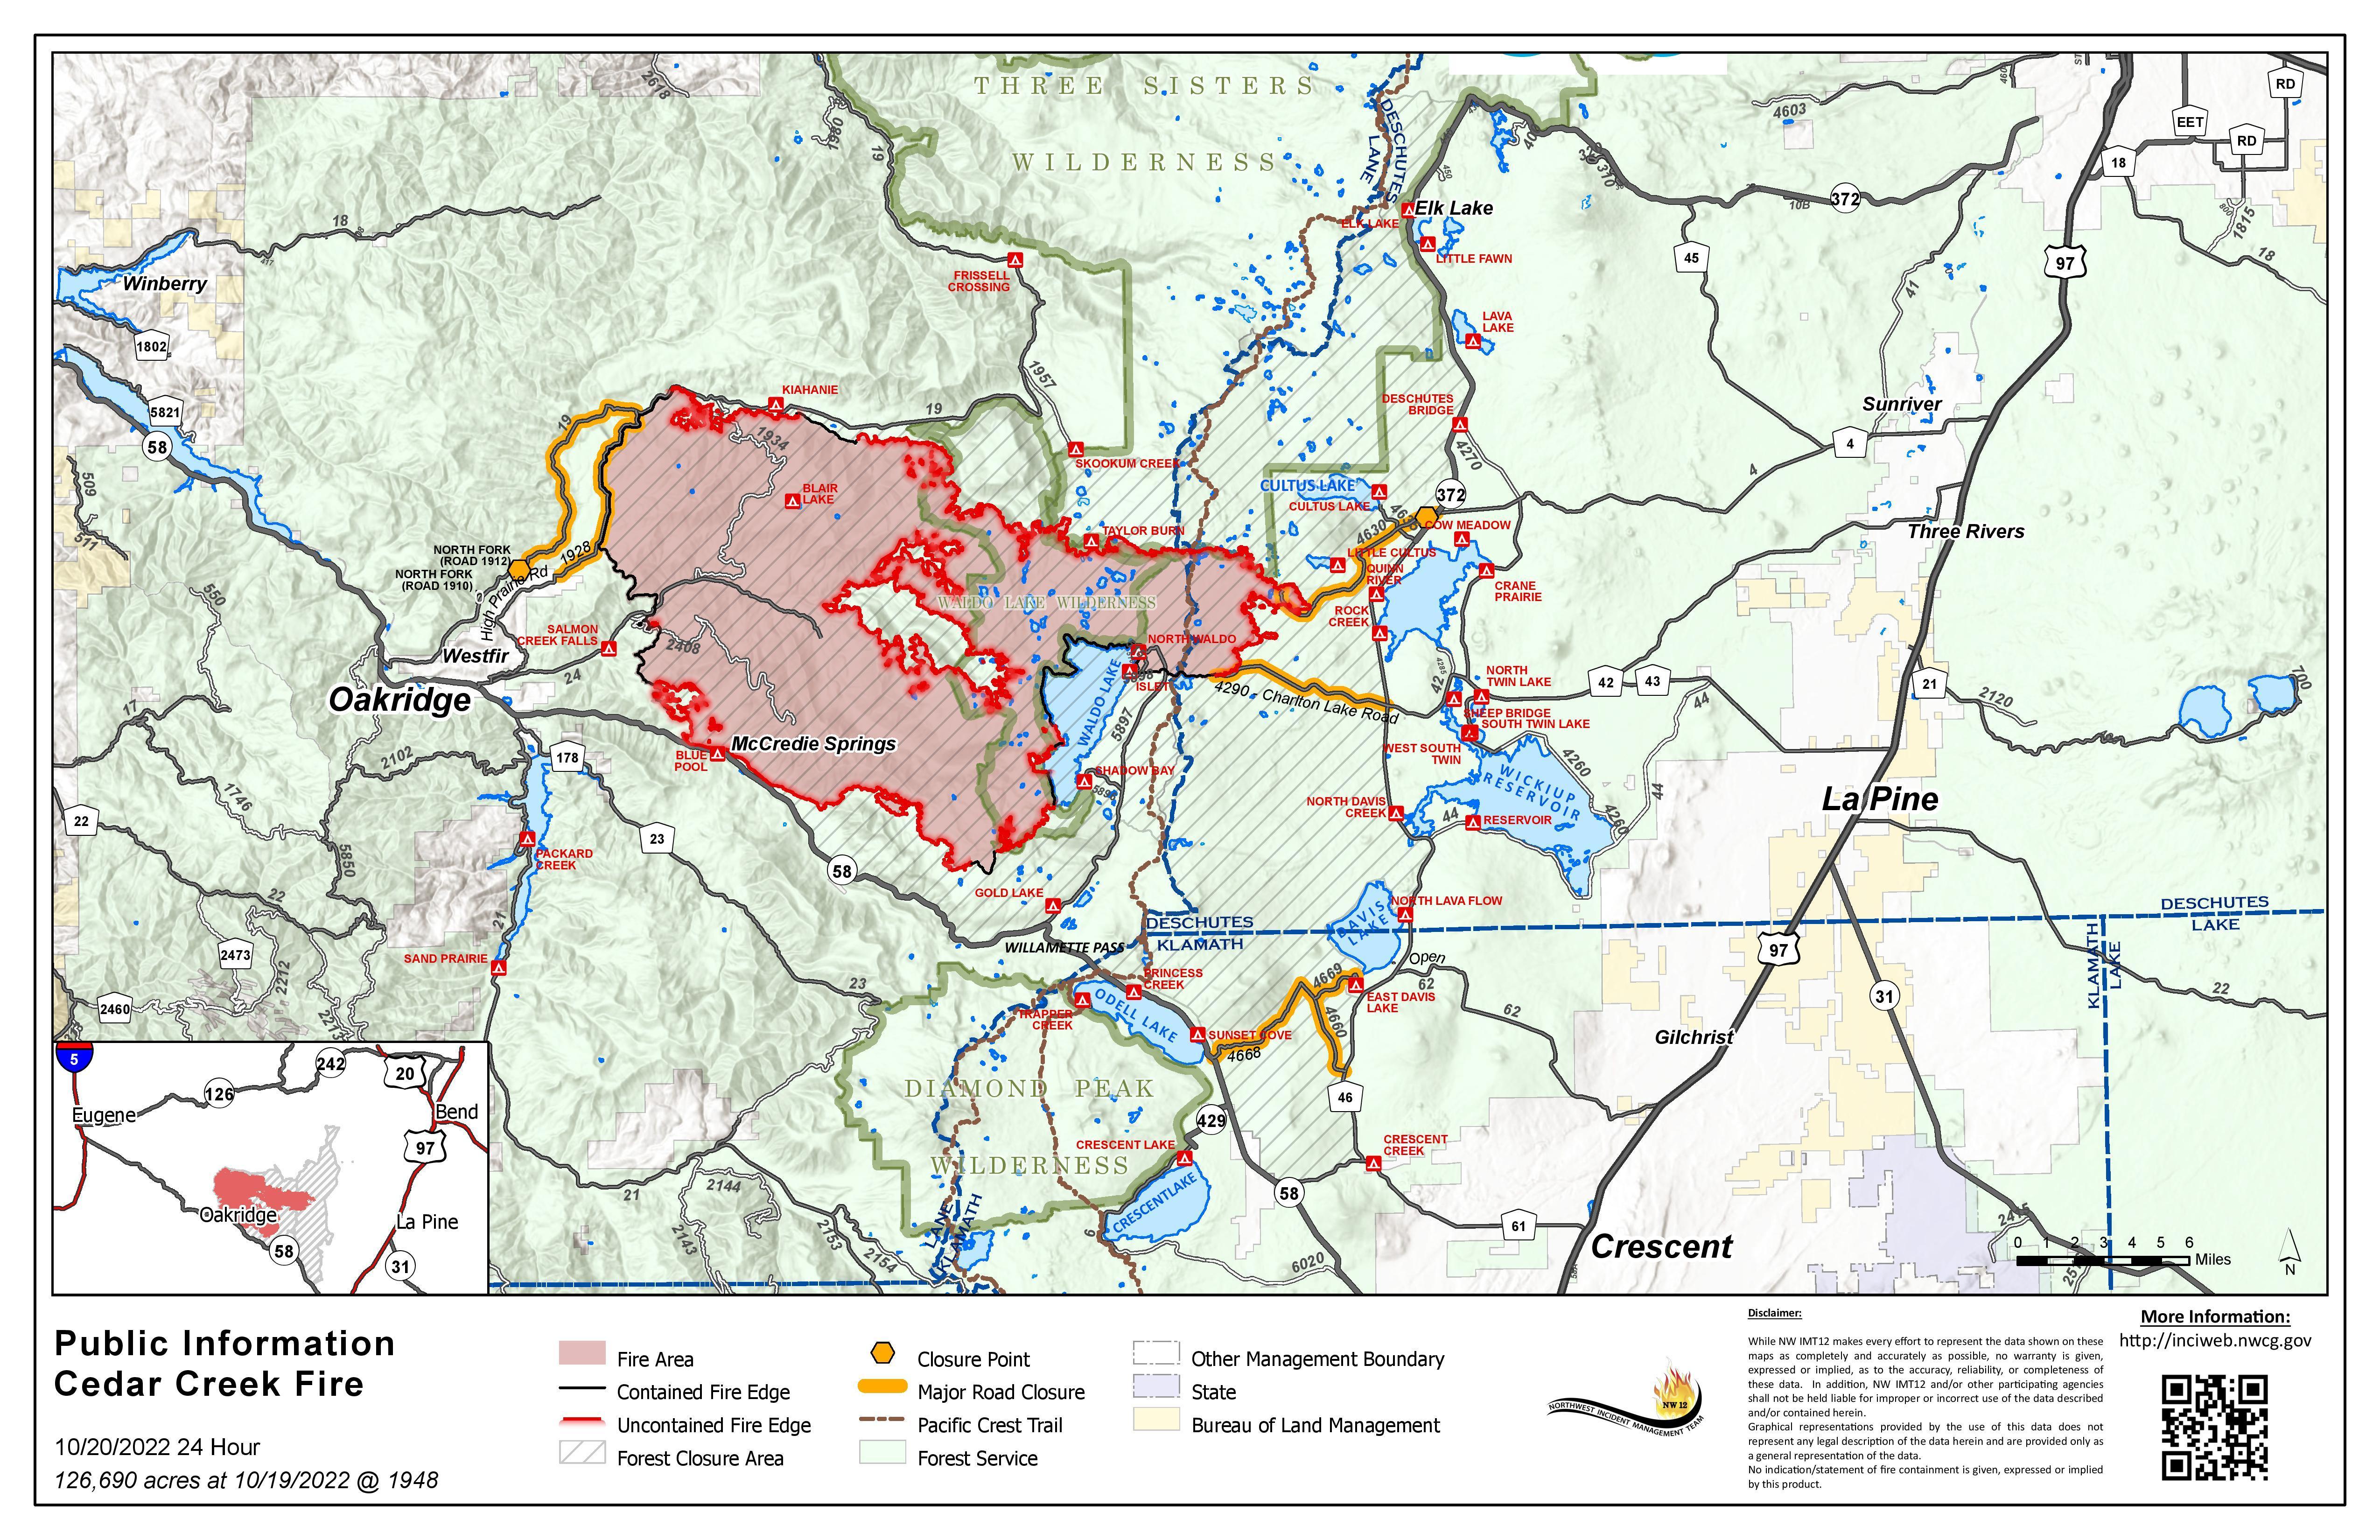 Cedar Creek Fire PIO Map October 20, 2022